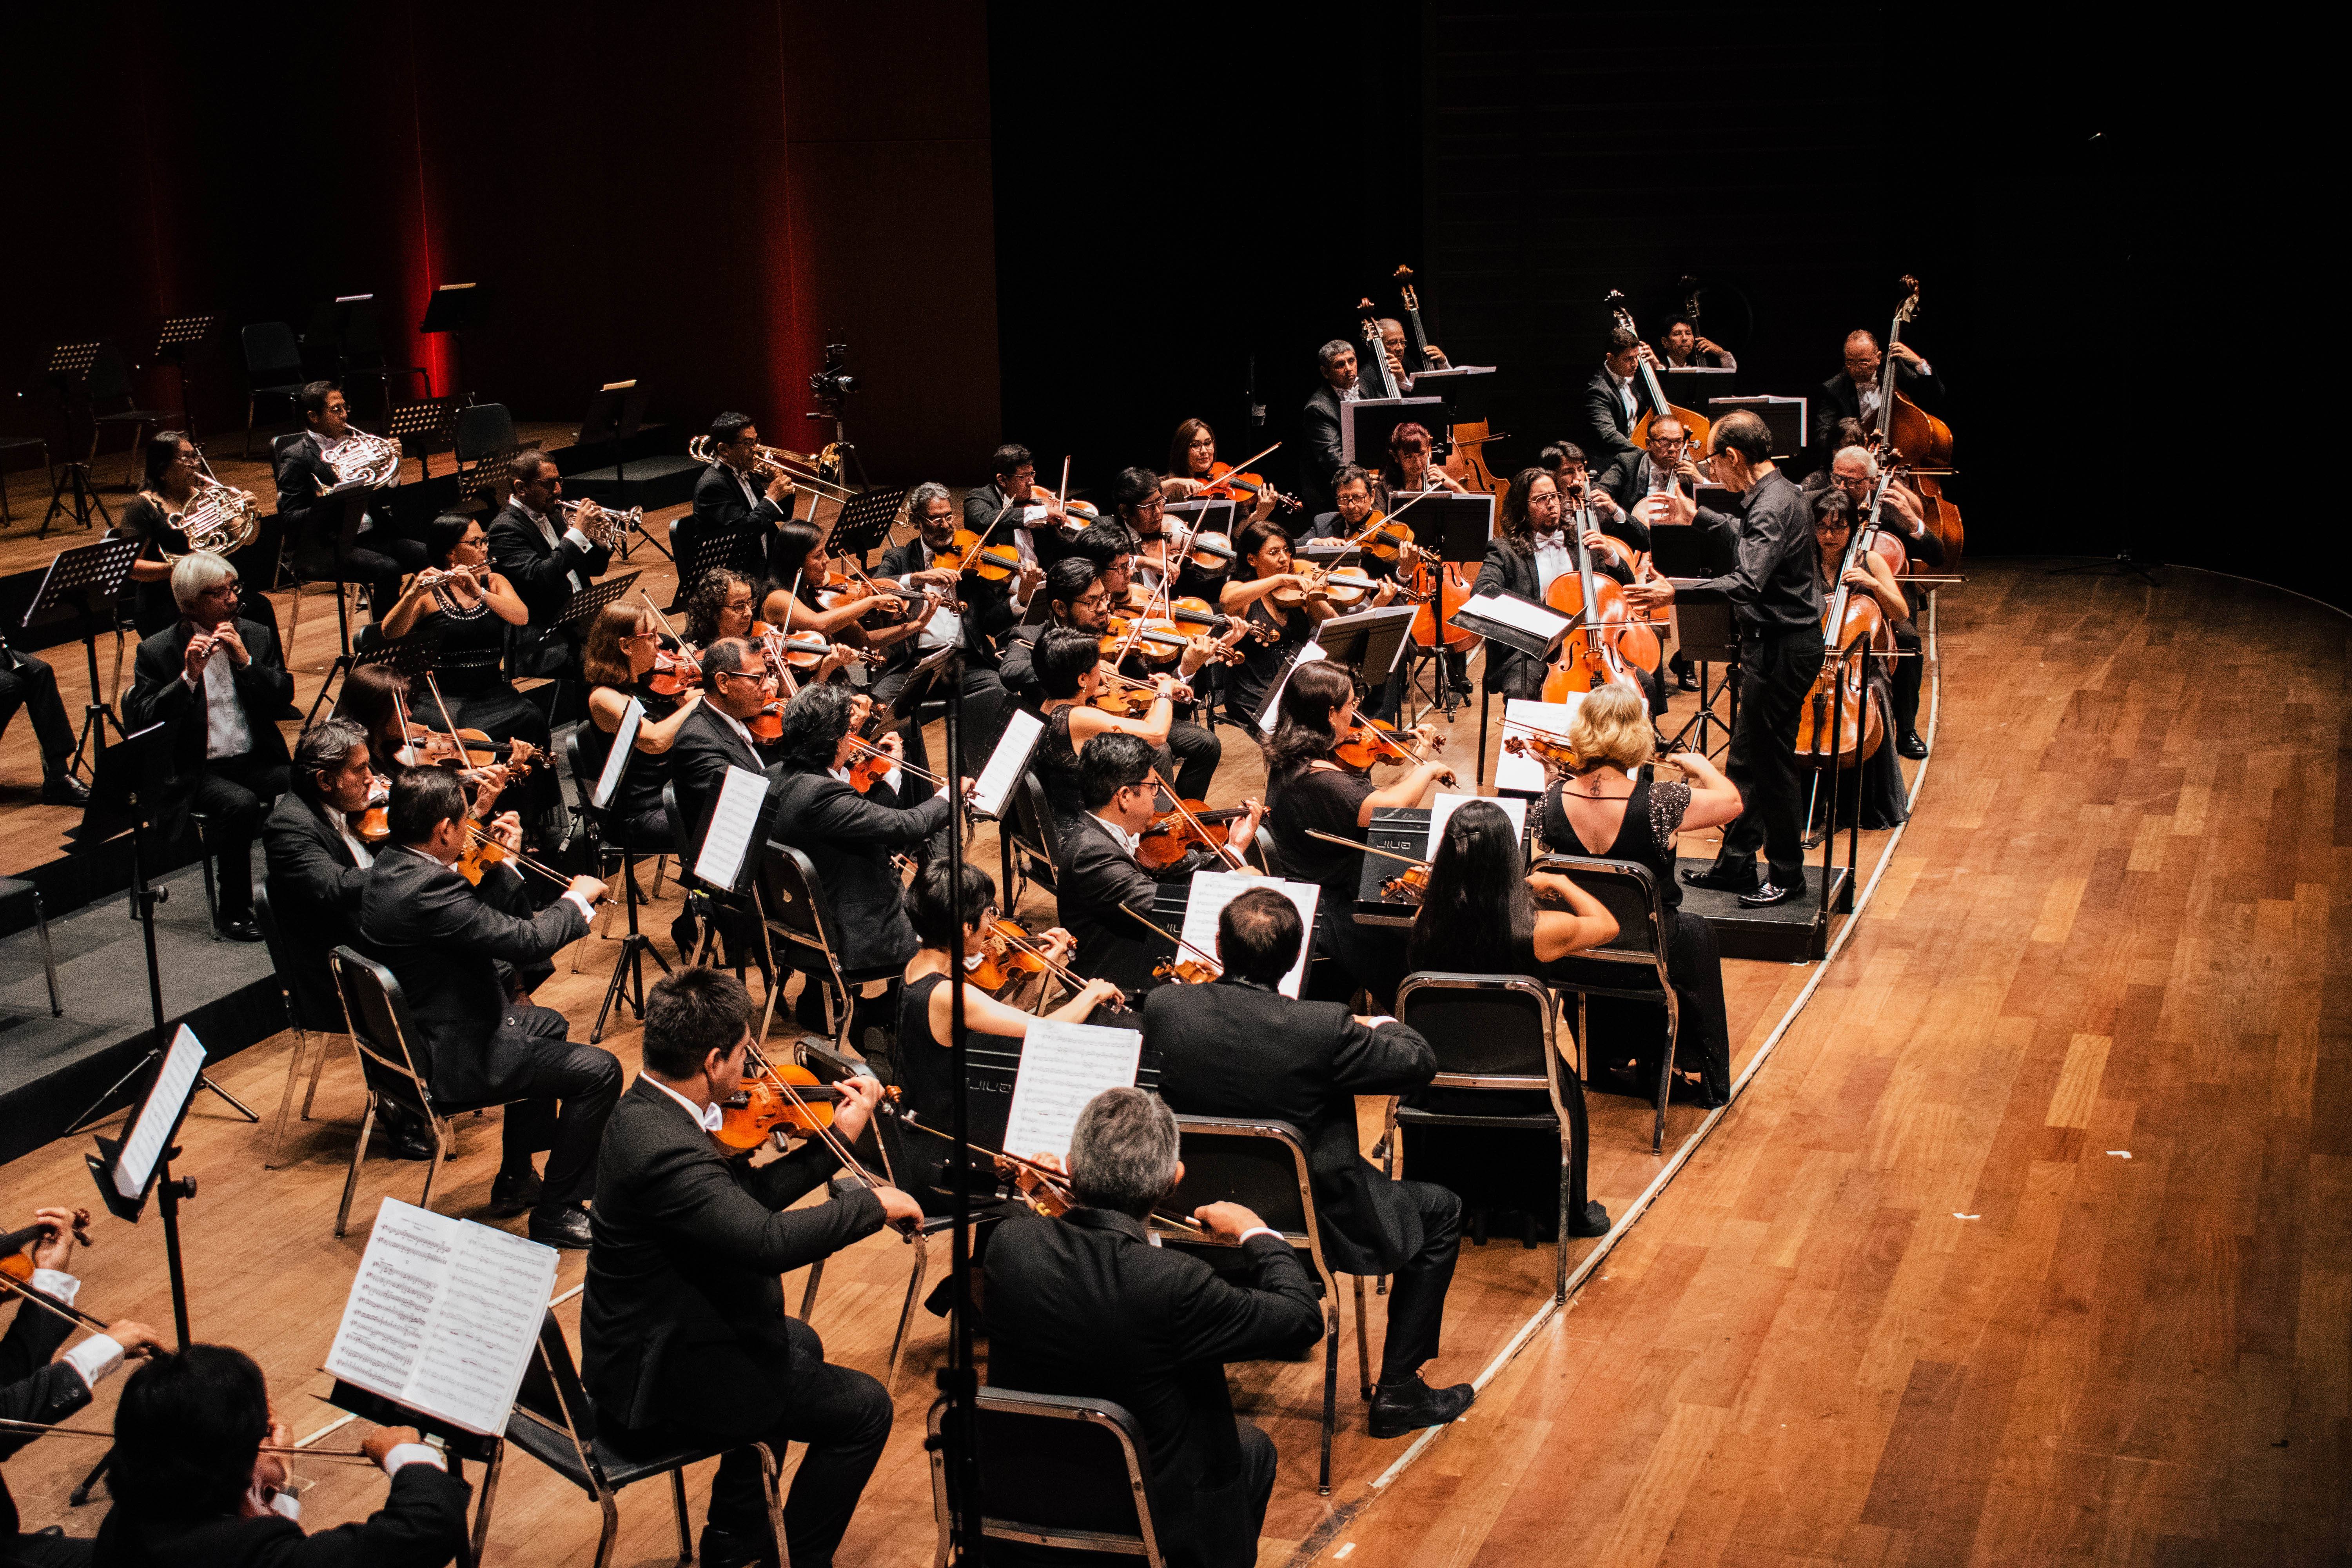 Orquesta Sinfónica Nacional del Perú presenta su concierto "Chopin & Schubert" 